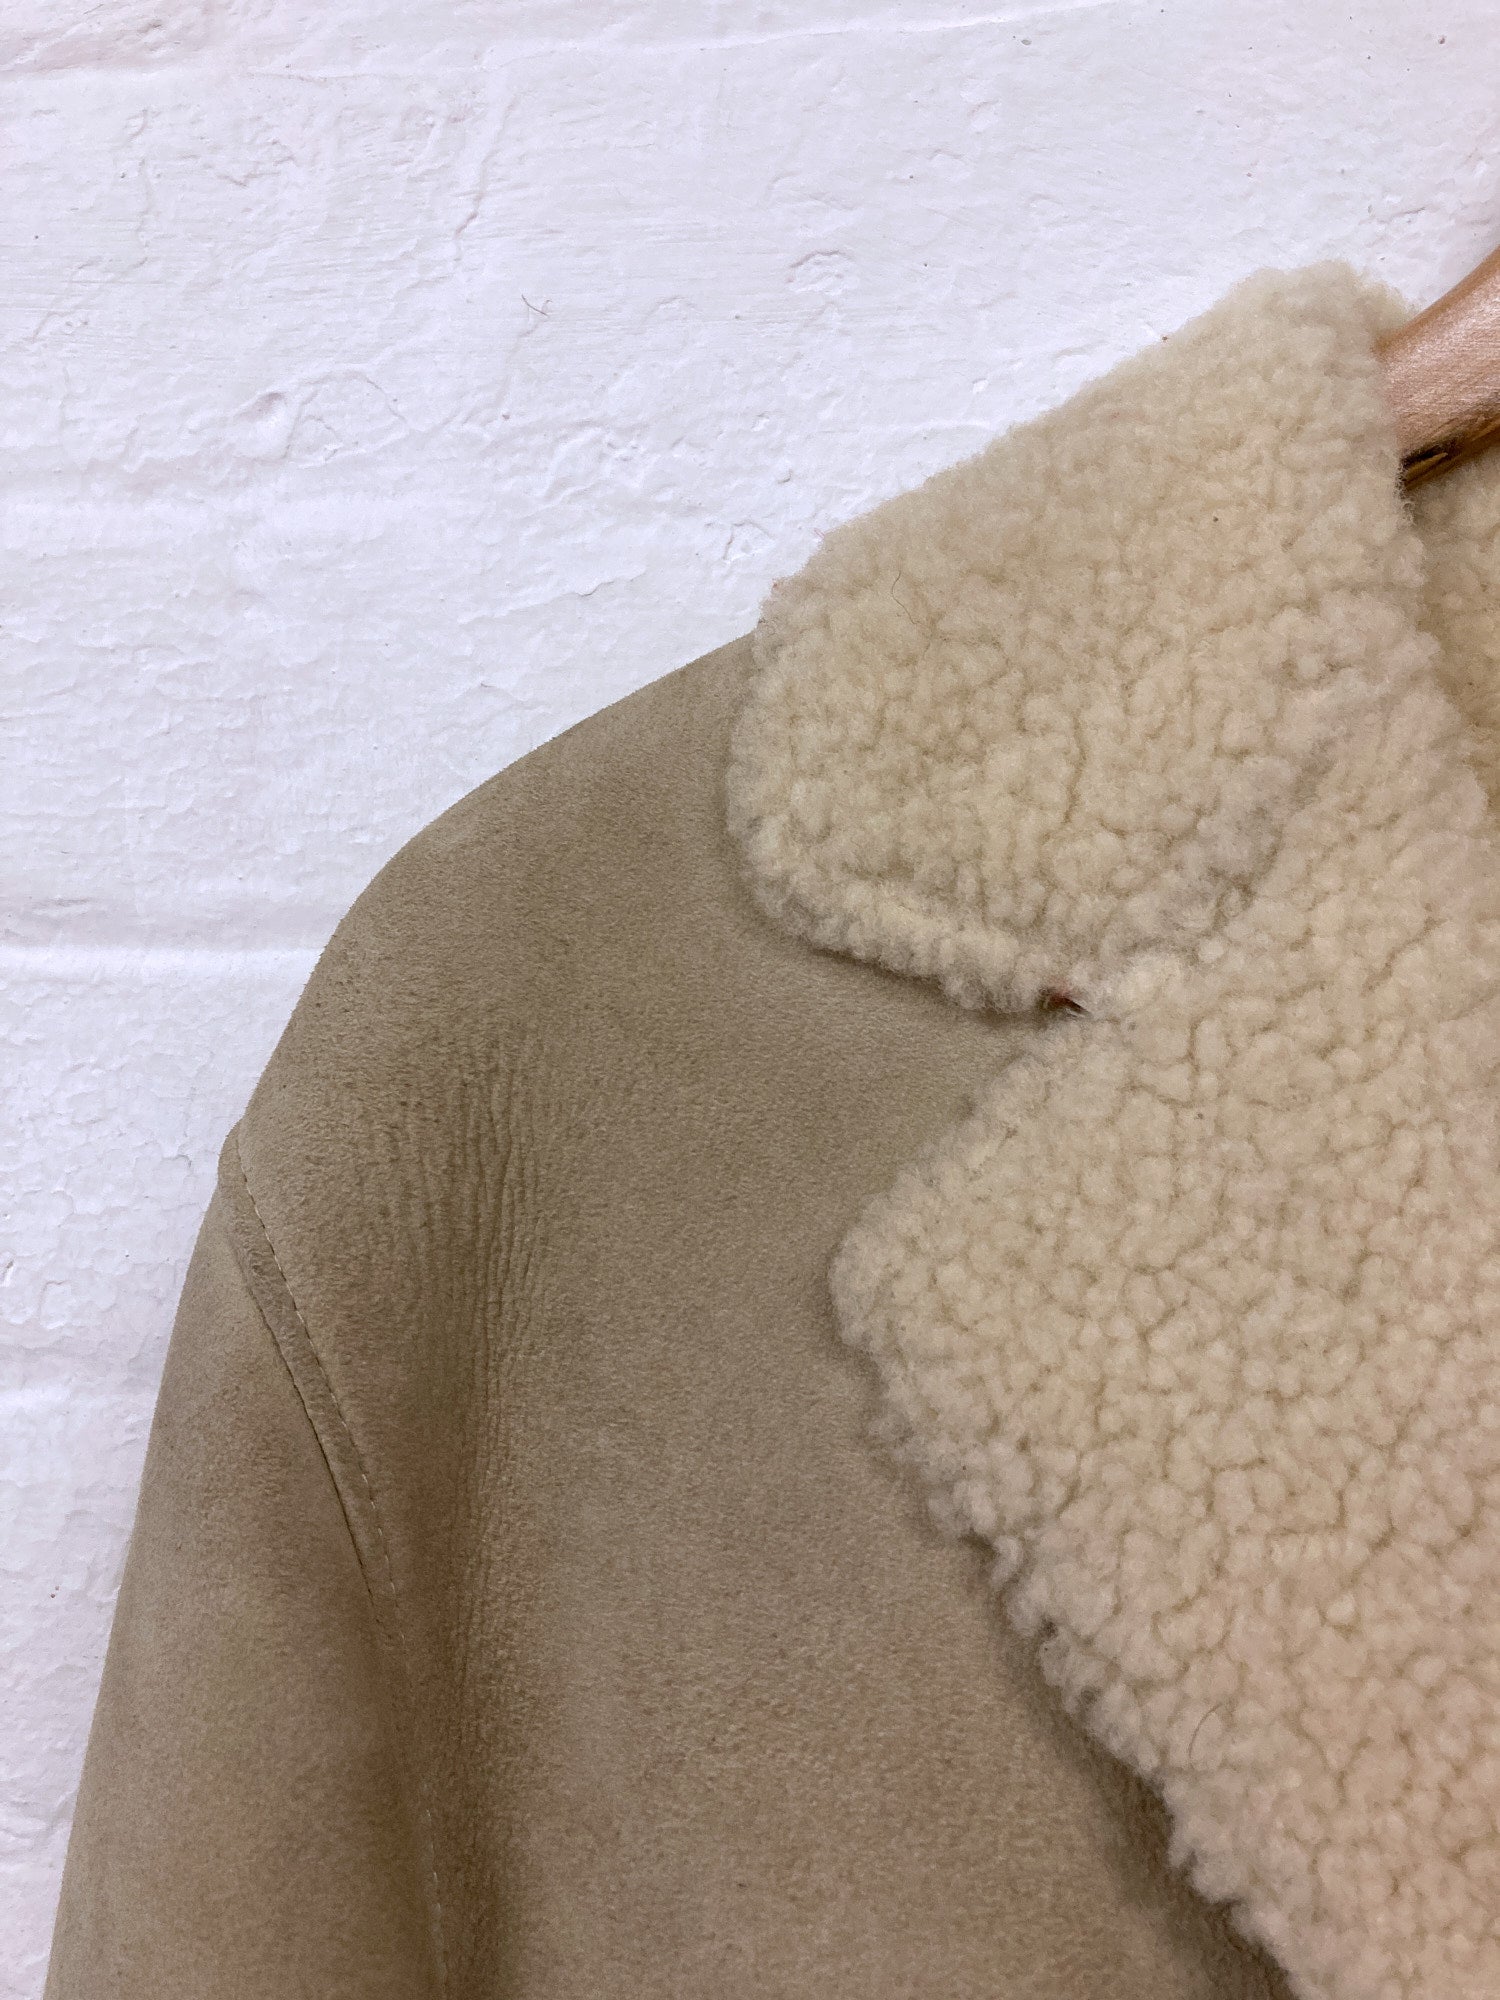 Christophe Lemaire pour Marsil Paris beige leather 3 button mouton coat - sz 38